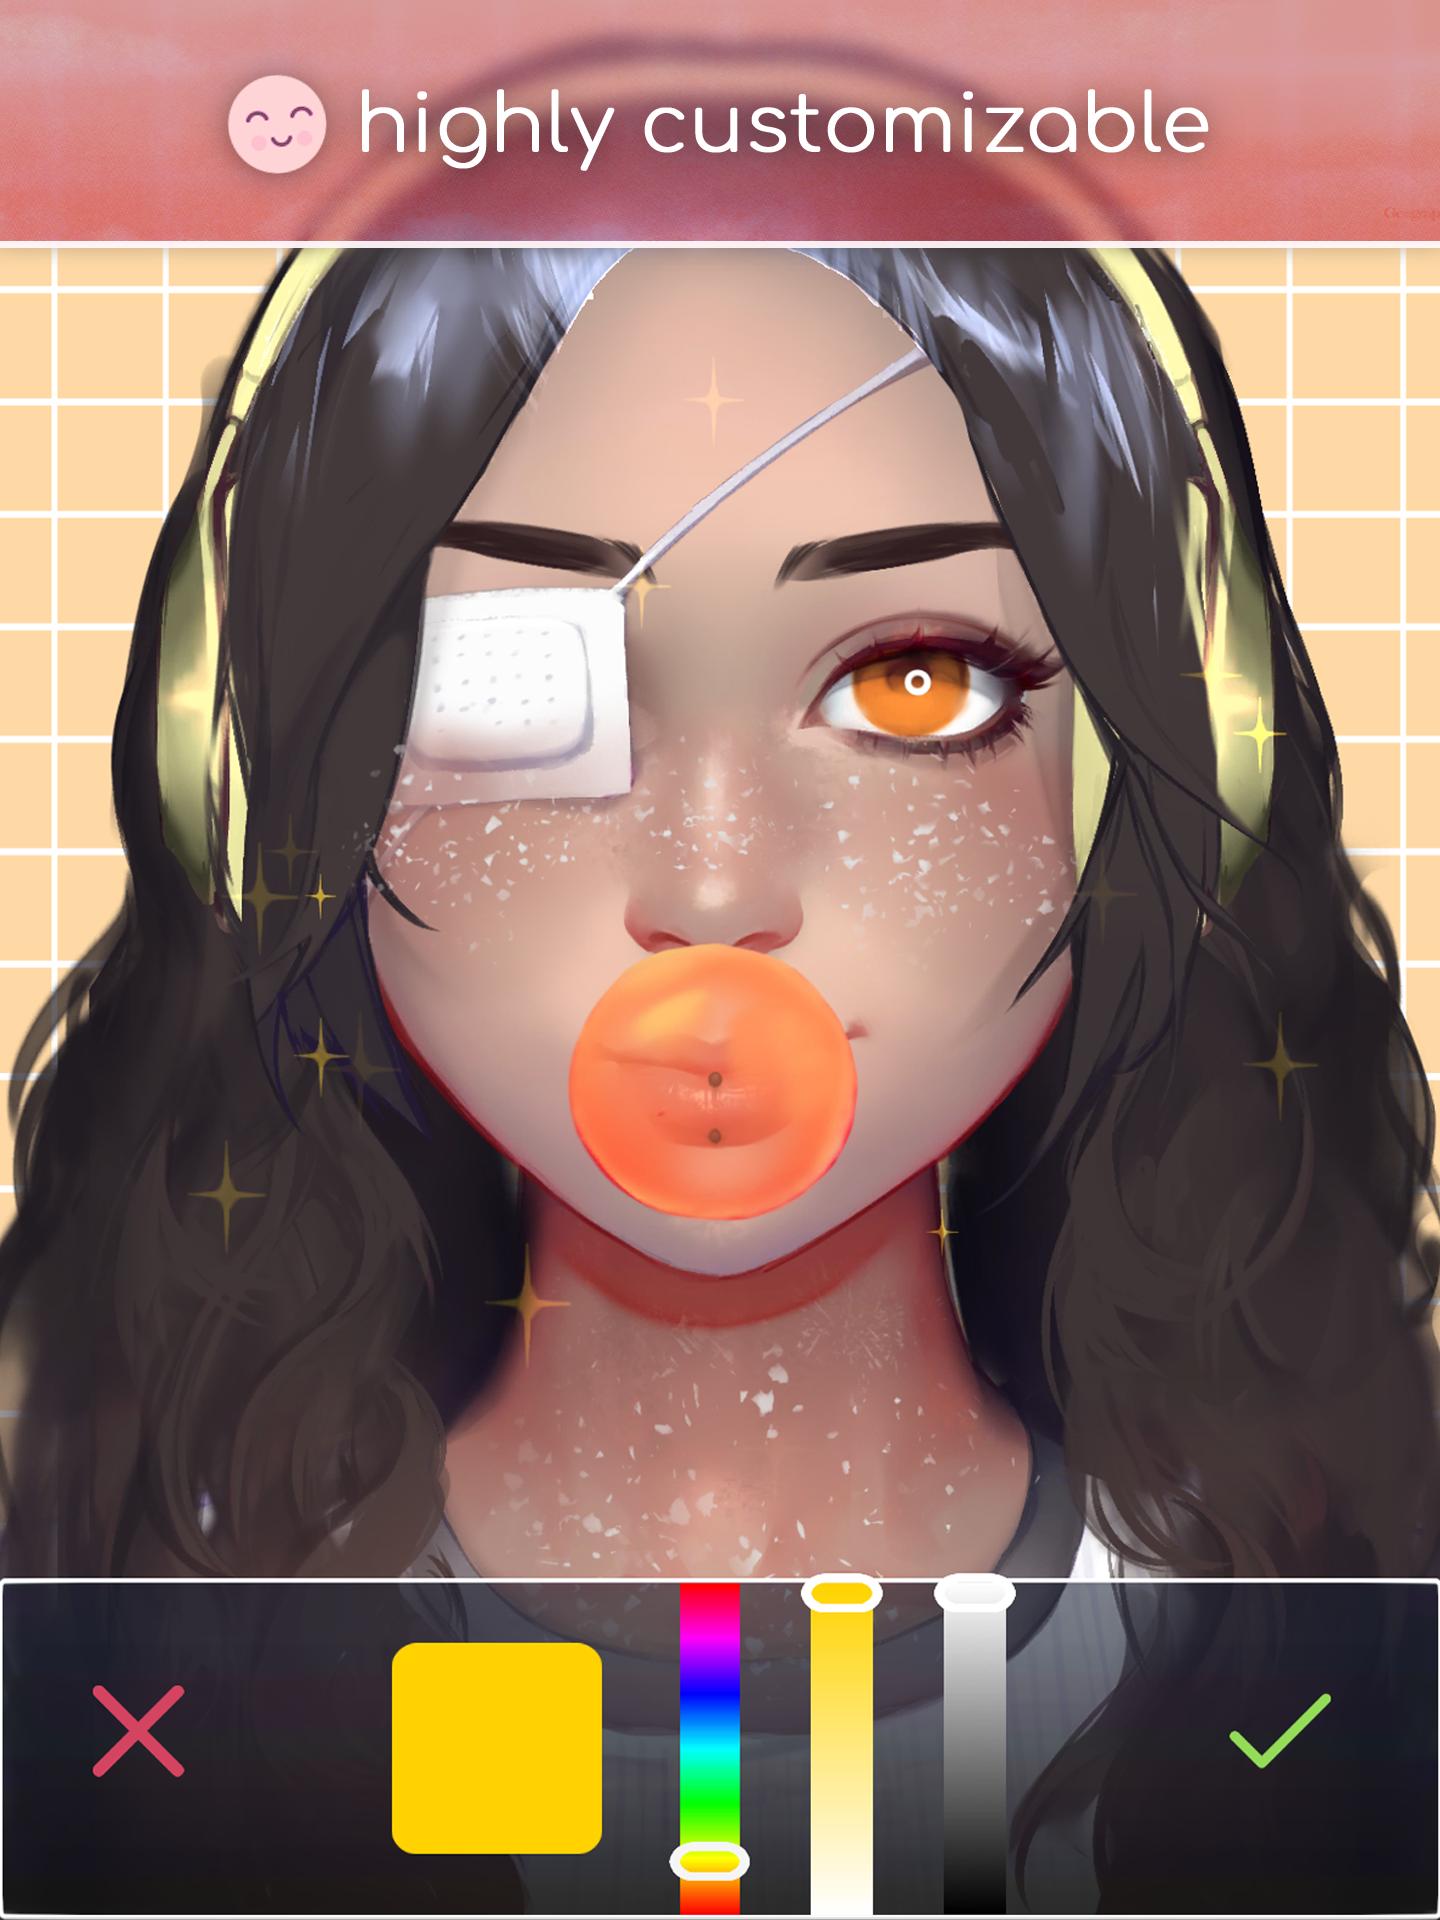 Live Portrait Maker: Girls MOD APK cho Android mang đến những tính năng mới và đầy tính năng nhập vai. Hình ảnh đẹp và sống động, nhân vật đa dạng và nhiều trang phục để lựa chọn. Nhanh chóng tải về ứng dụng và khám phá thế giới đa sắc màu của các nhân vật kute và đầy cá tính!